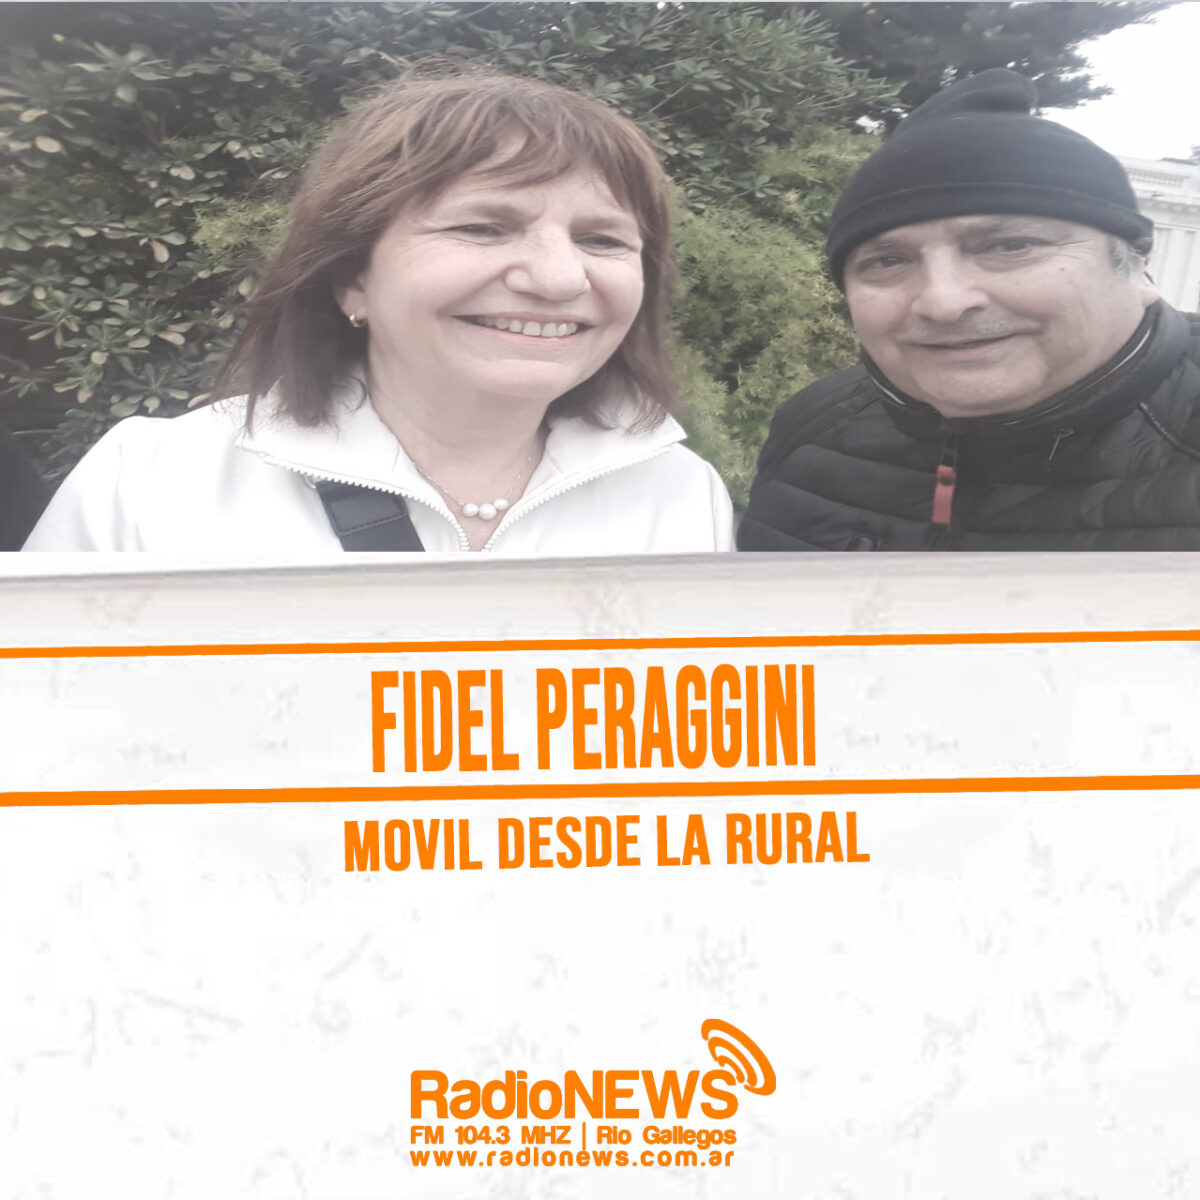 Patricia Bullrich, entrevista con Fidel Peraggini